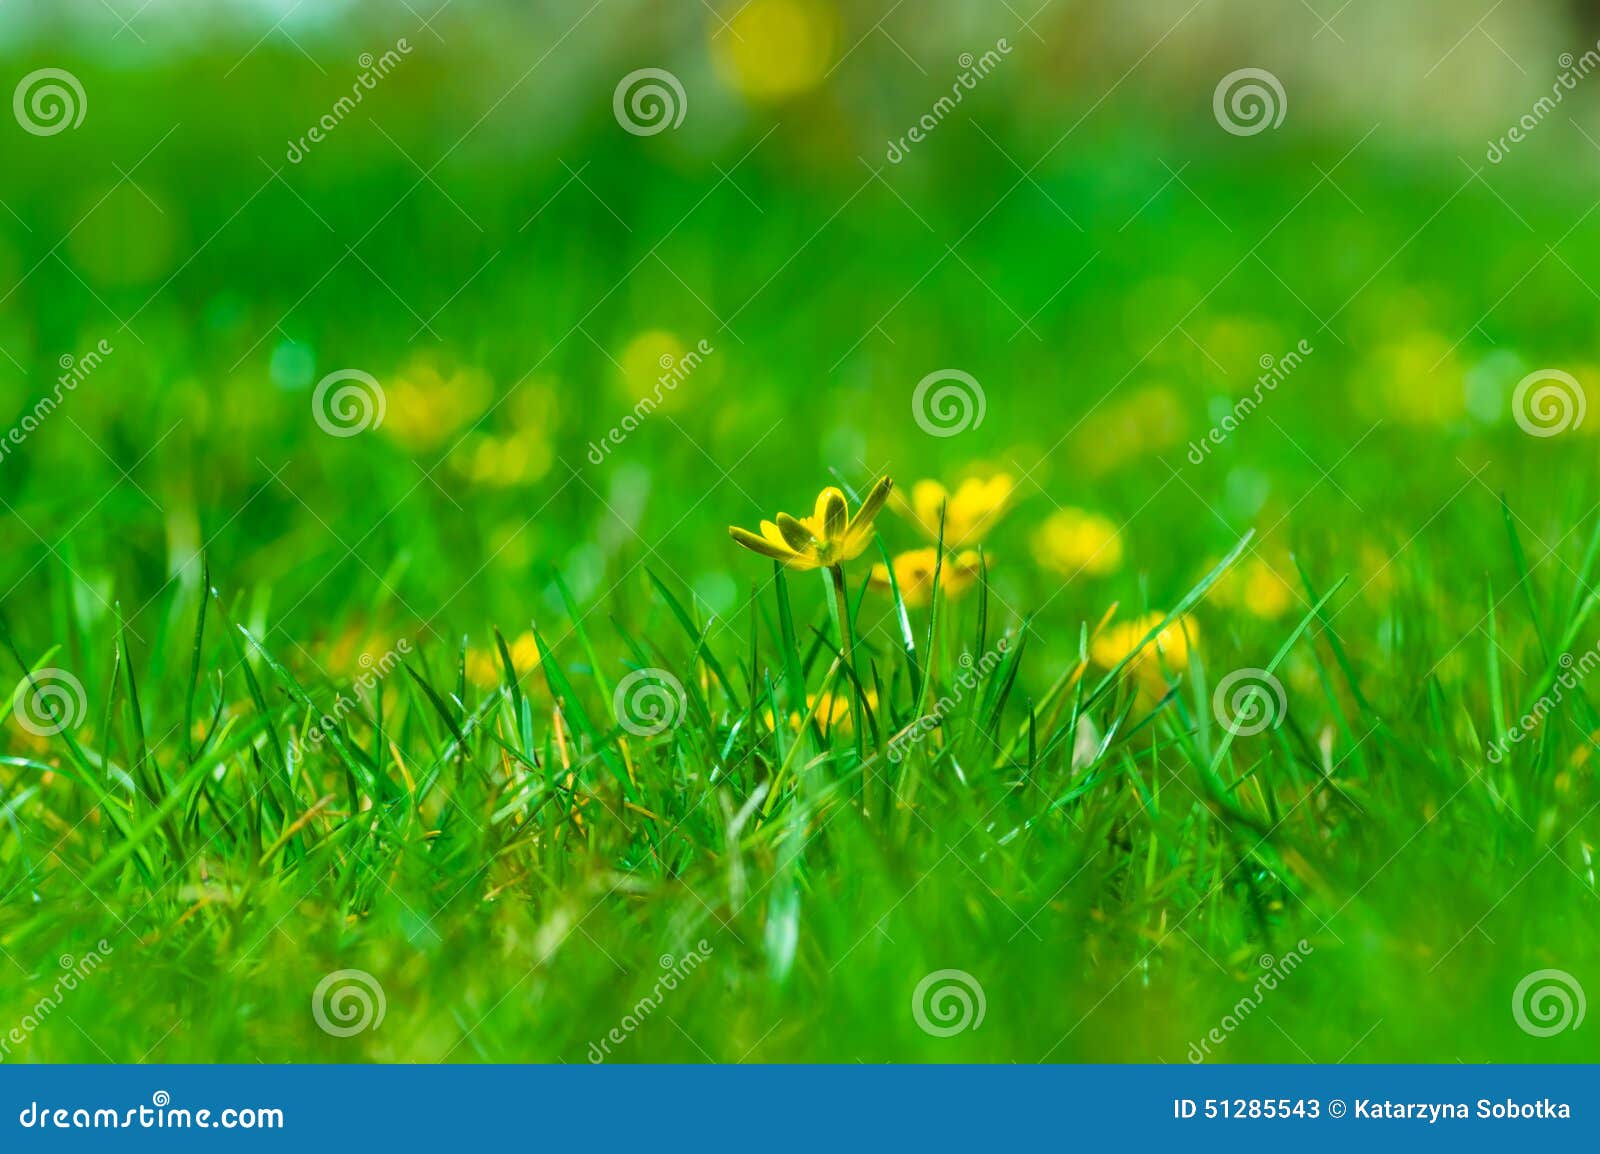 Ranúnculos (acris del ranúnculo). Ranúnculos amarillos perdidos en la hierba verde